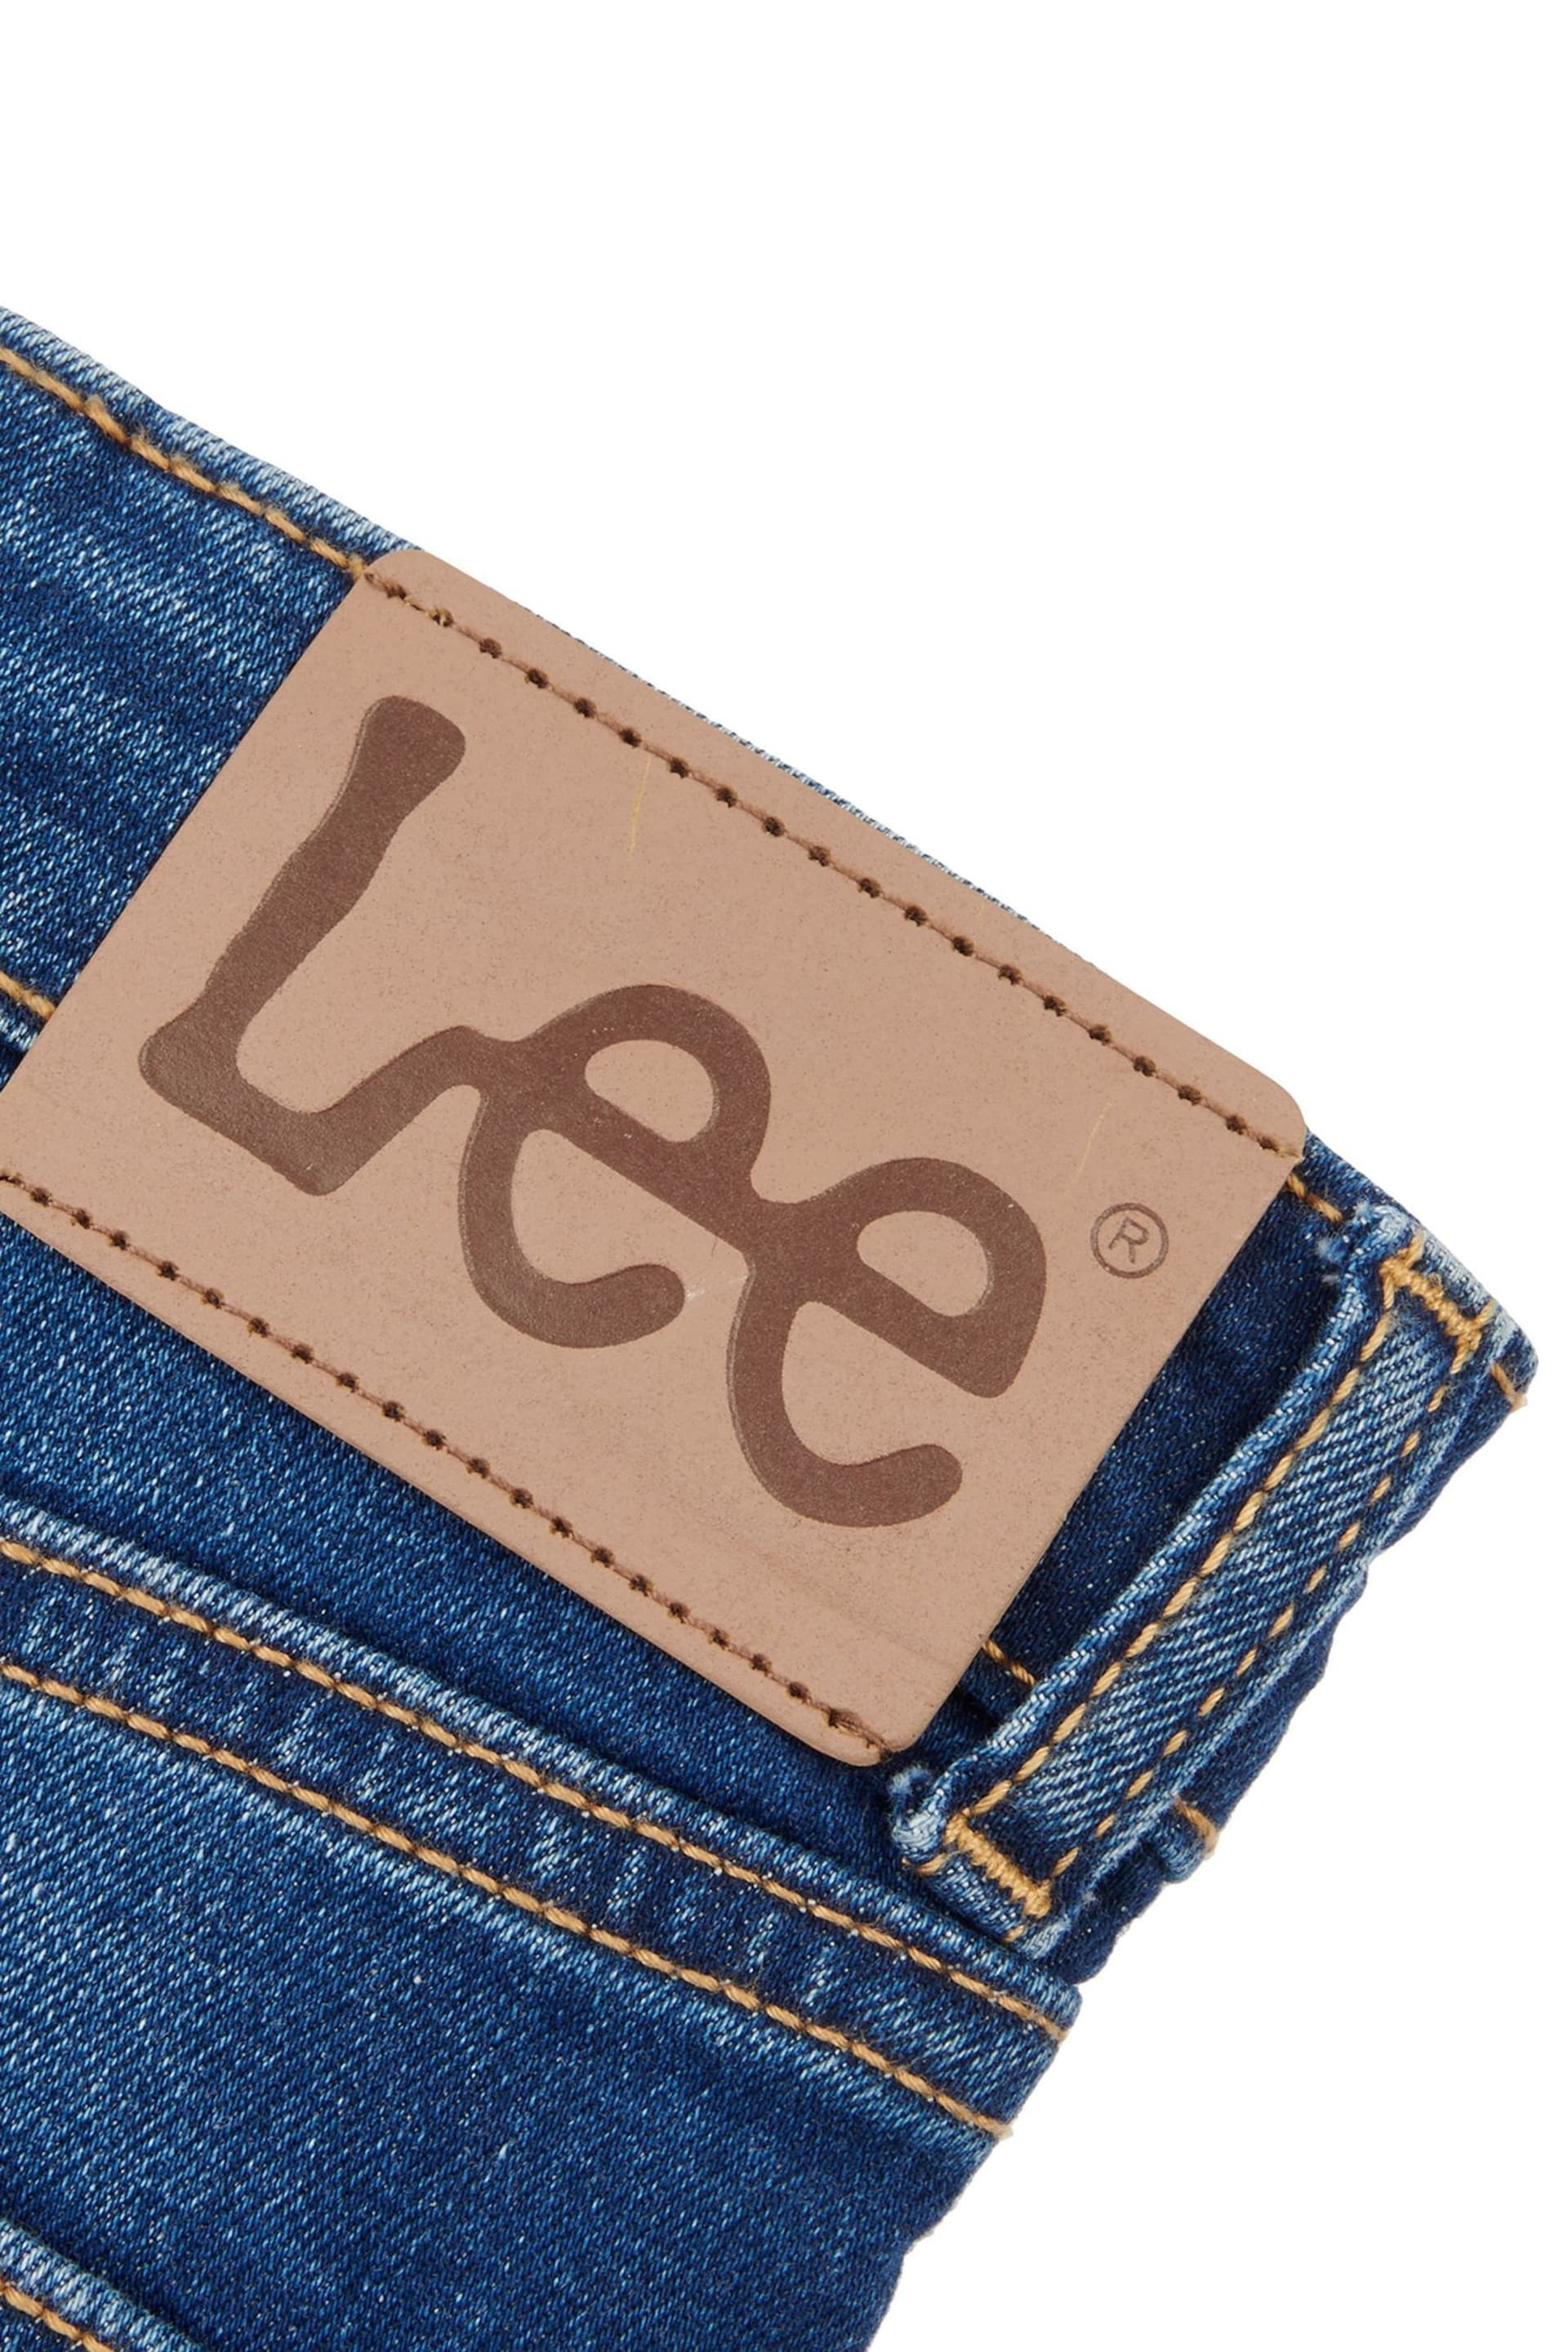 Lee Boys Luke Slim Fit Jeans - Image 9 of 9